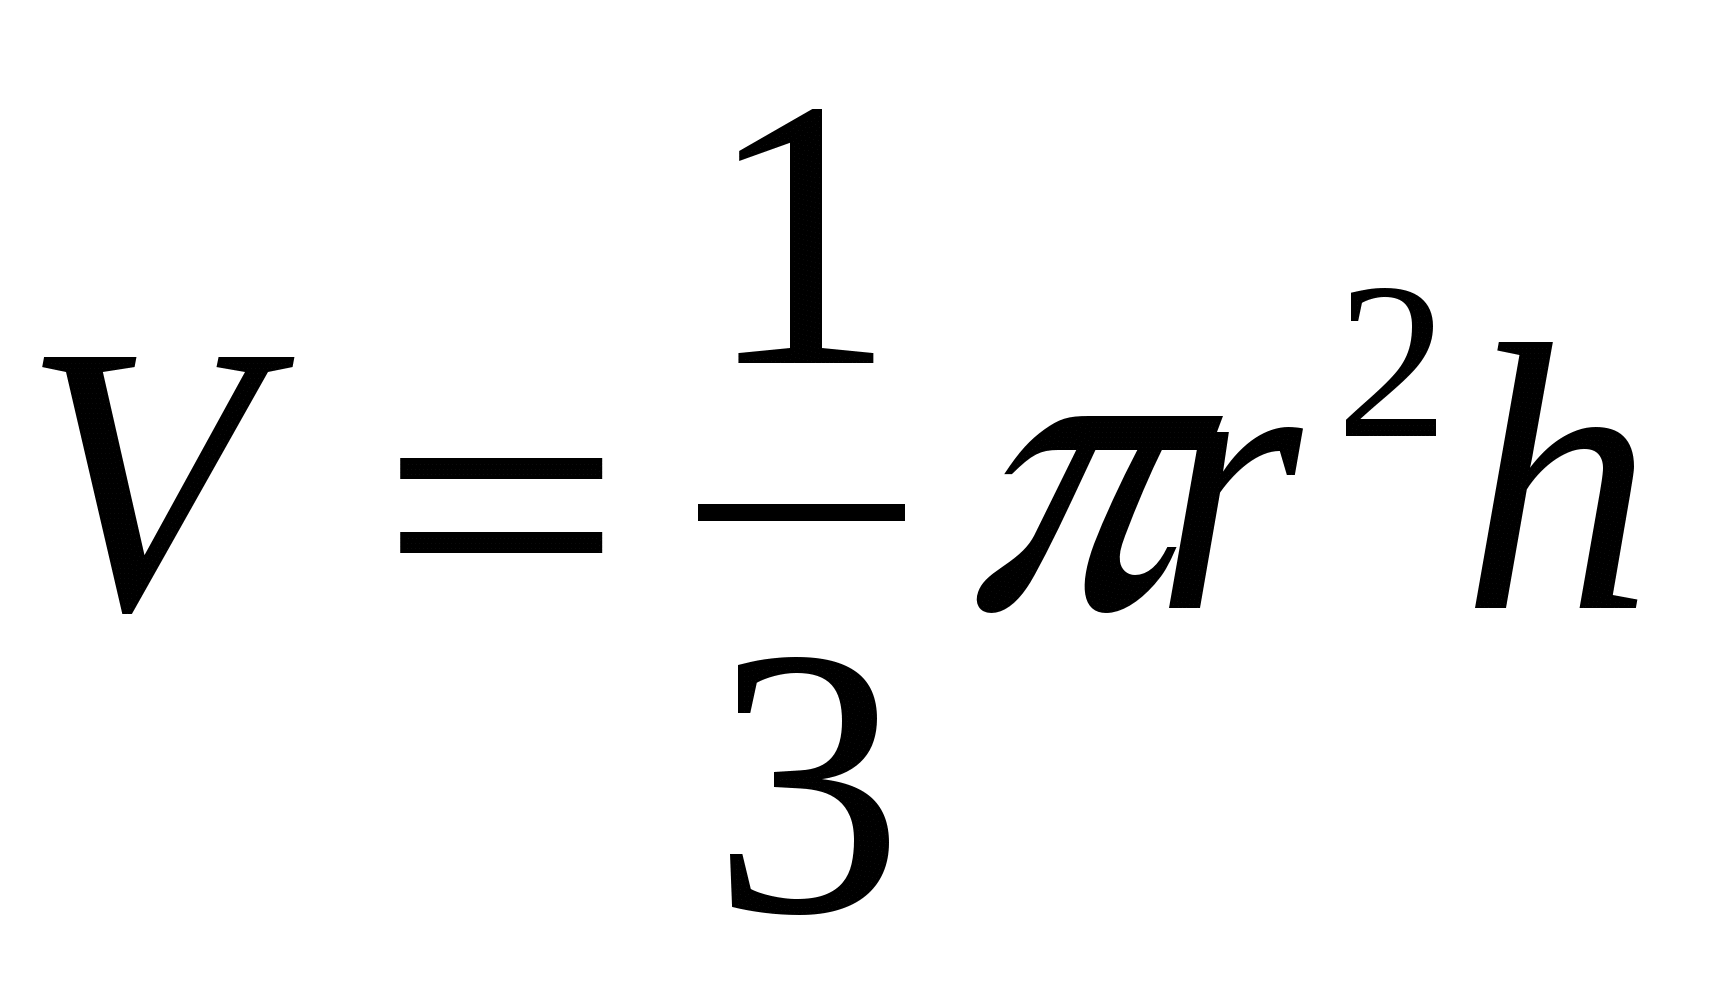 Объем п формула. Объем конуса формула. Формула вычисления объема конуса. Формула объема конуса через диаметр. Объём конуса формула через диаметр и высоту.